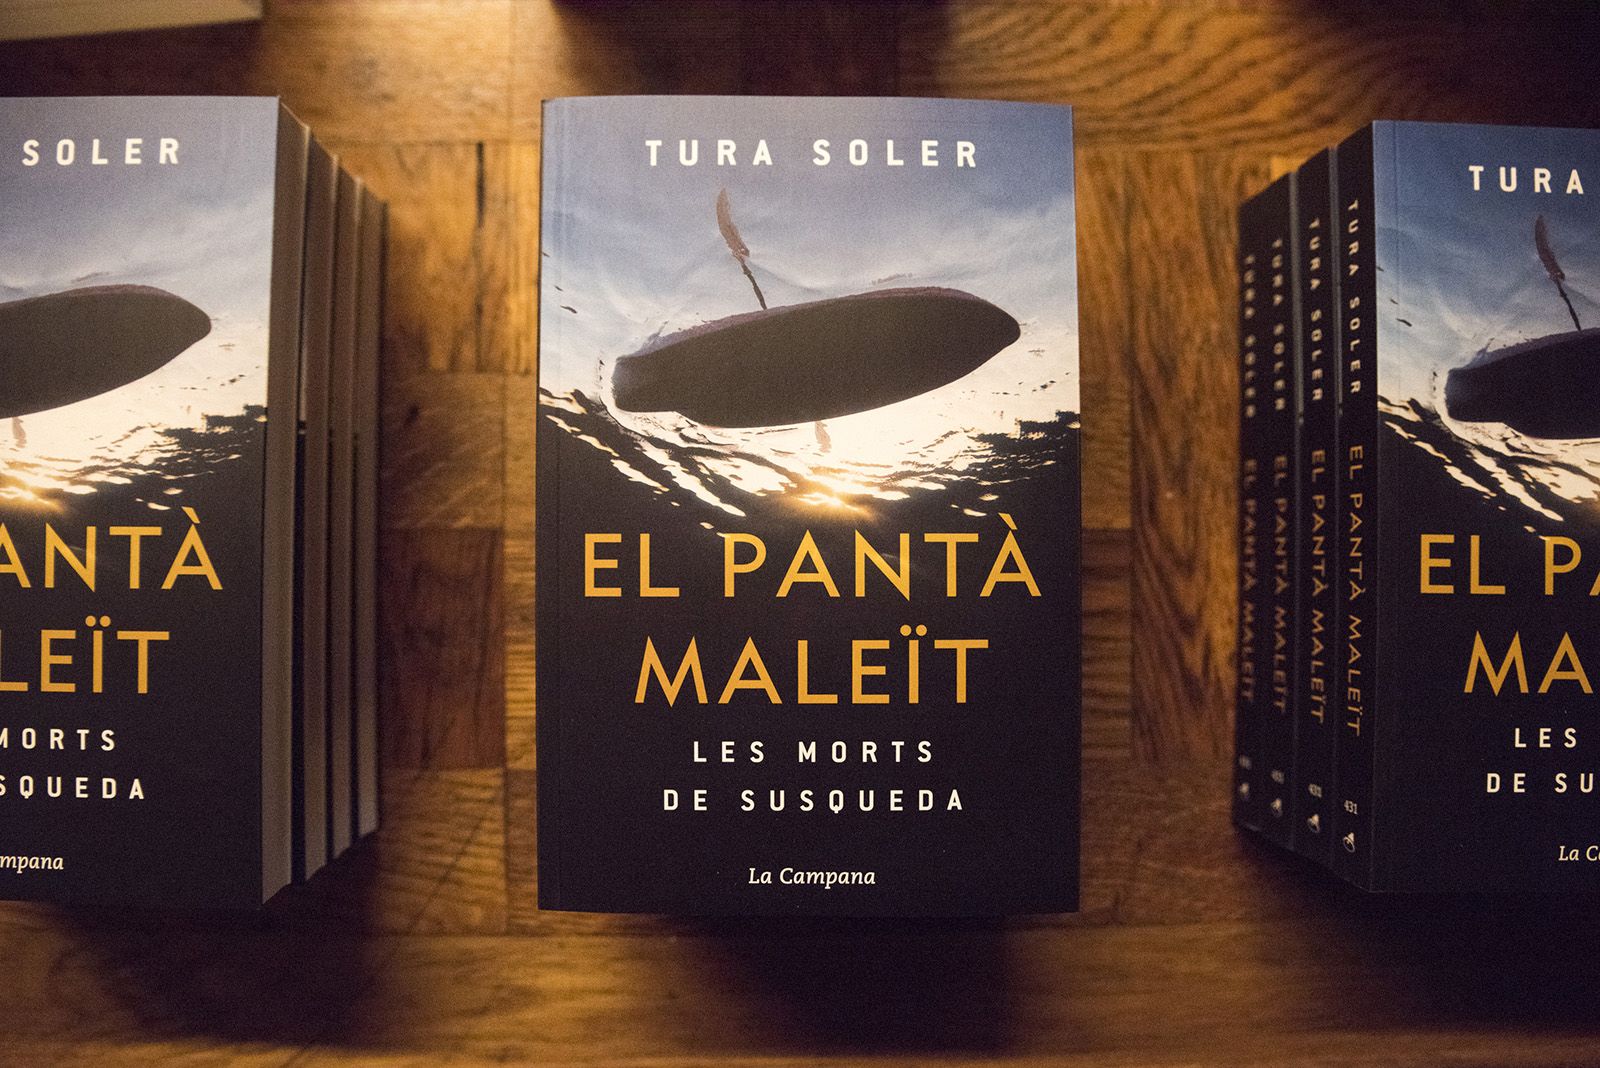 Presentació del llibre "El pantà maleït" i "Orillas del pantano" de Tura Soler. Foto: Bernat Millet.